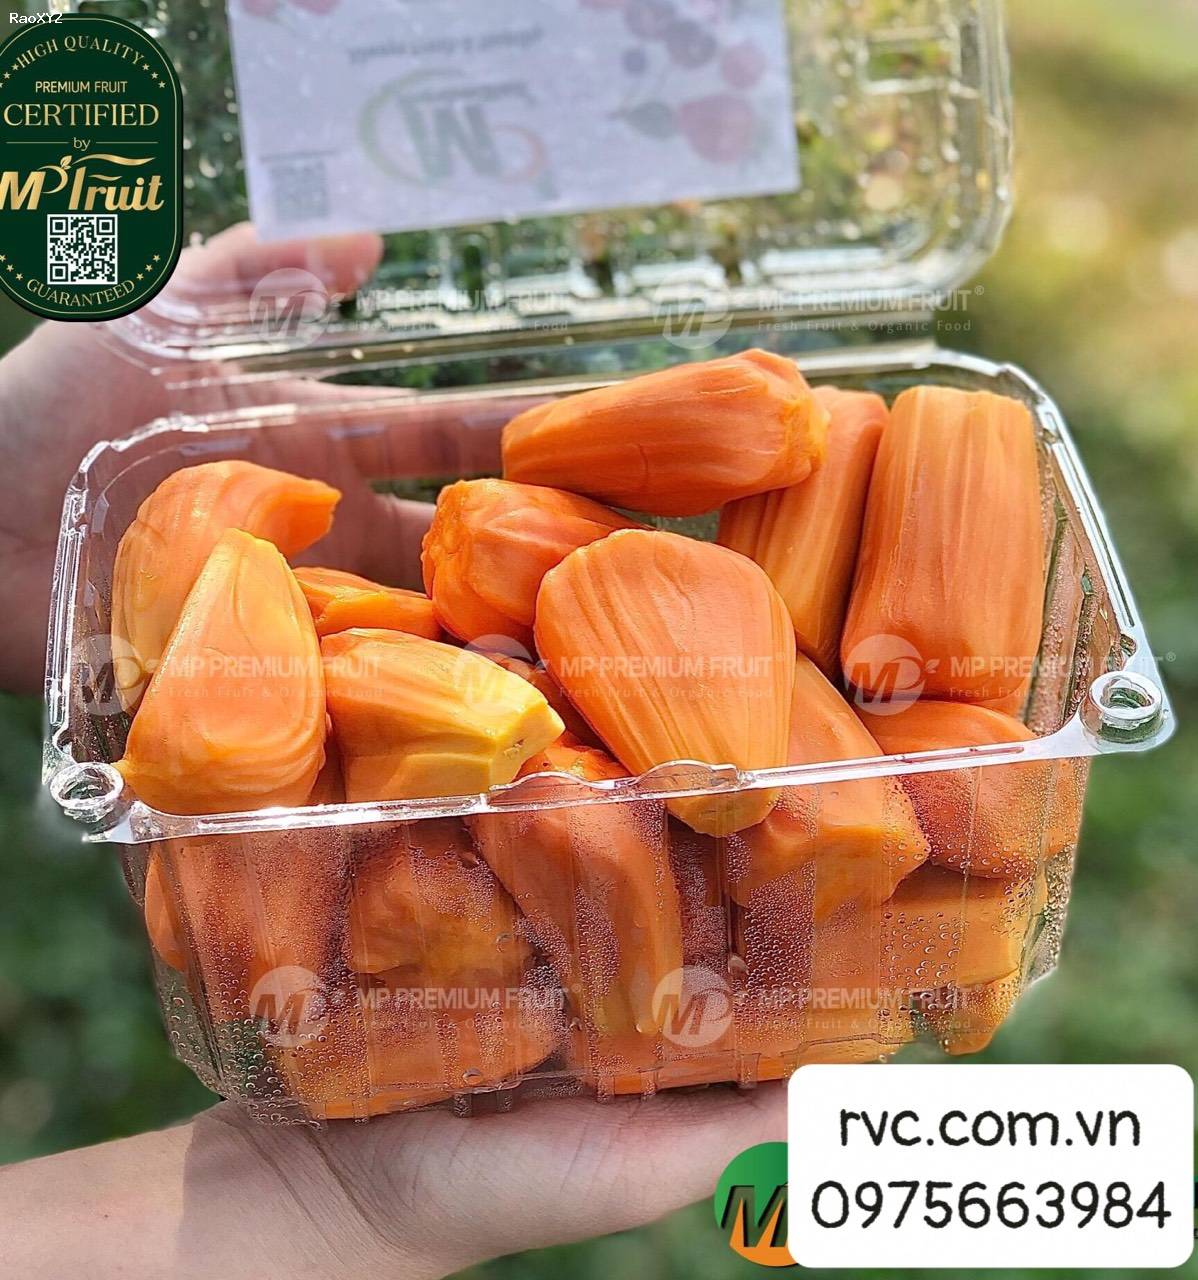 Chuyên sỉ hộp nhựa đựng trái cây 1kg P1000B tại Đồng Nai.